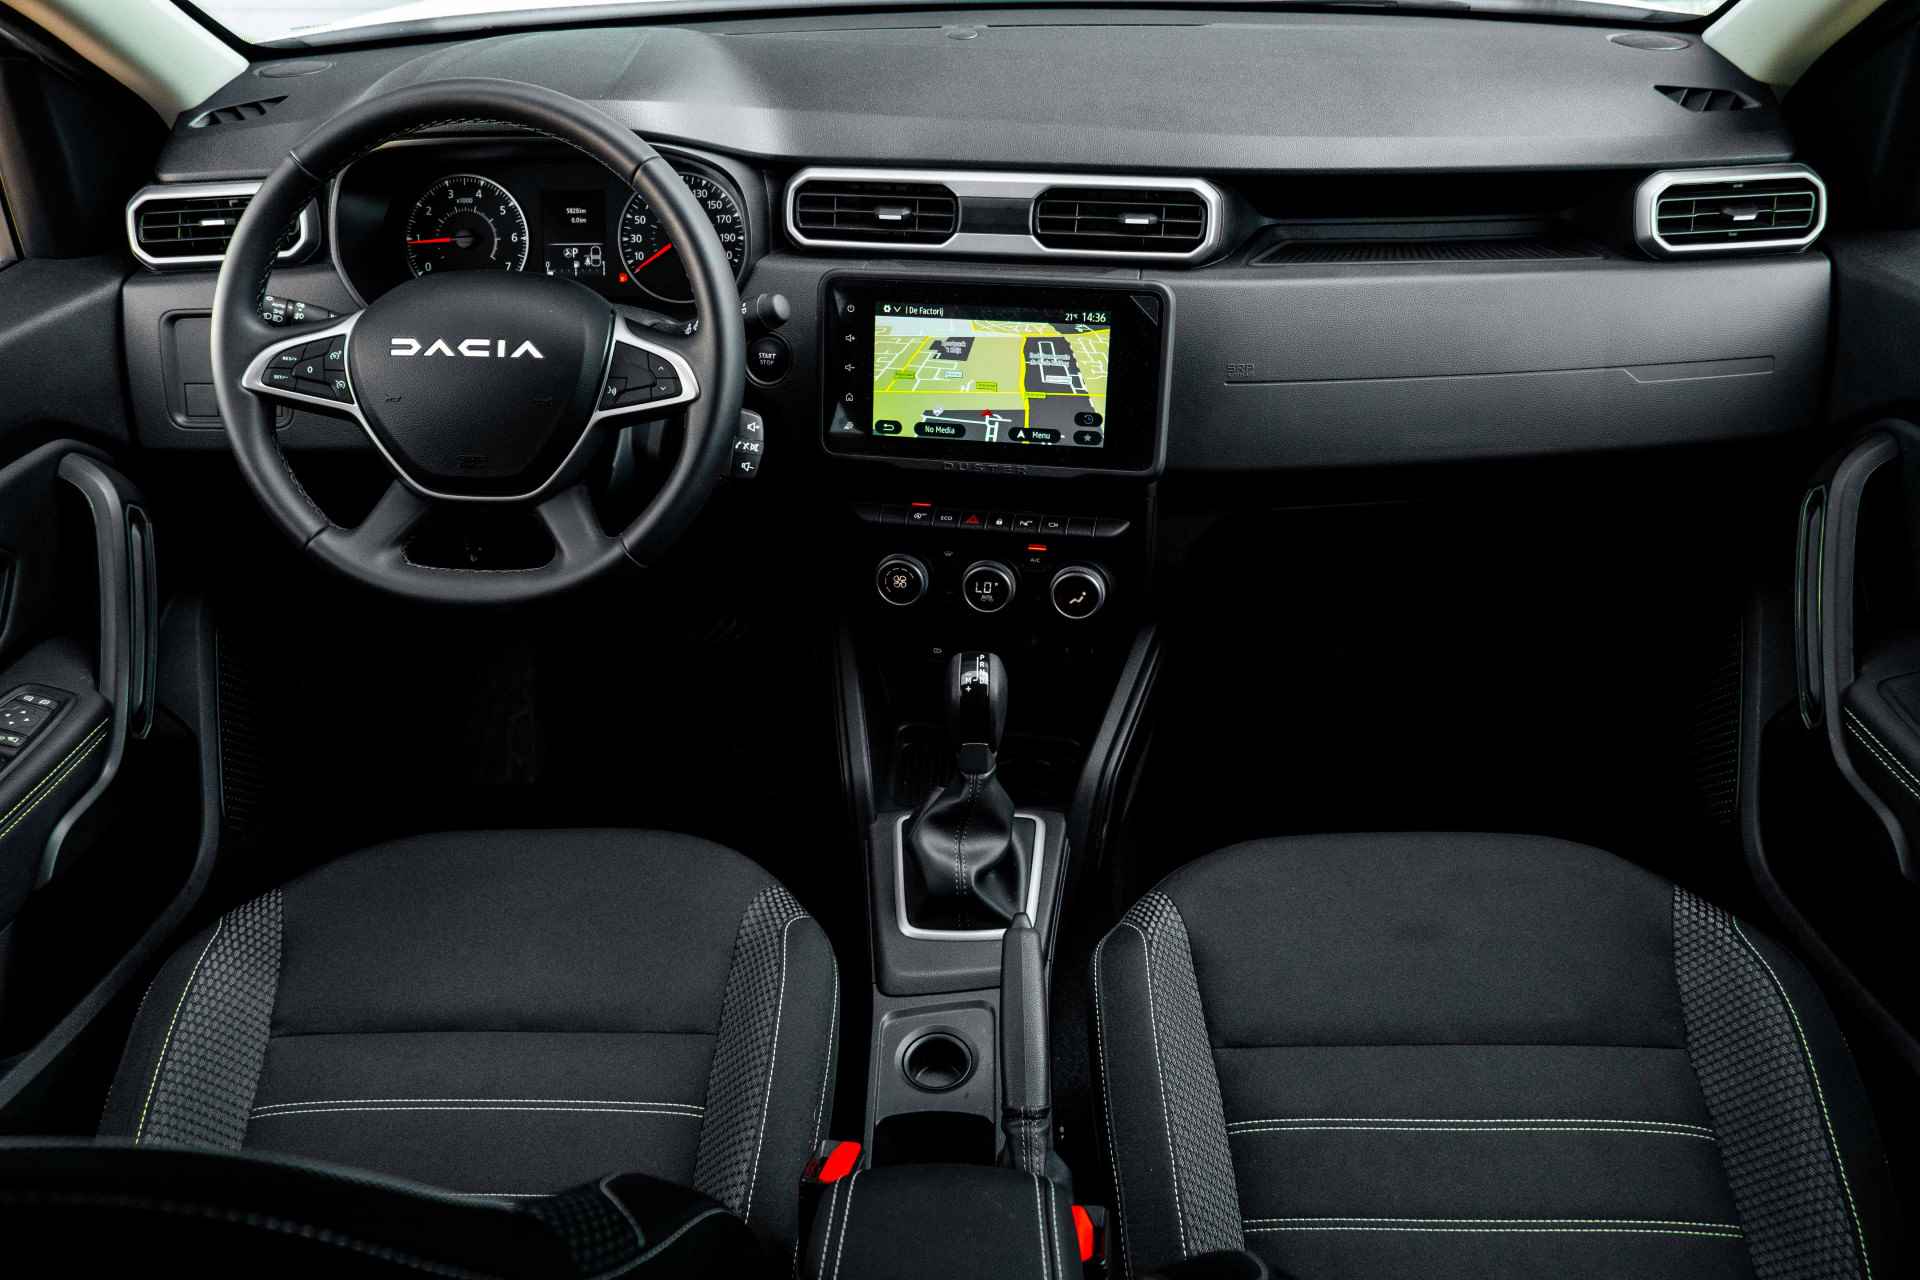 Dacia Duster 1.3 TCe 150 Automaat Extreme Achteruitrijcamera [ Navigatie [ ECC [Keyless Entry/Start | incl. Bovag rijklaarpakket met 12 maanden garantie - 8/46